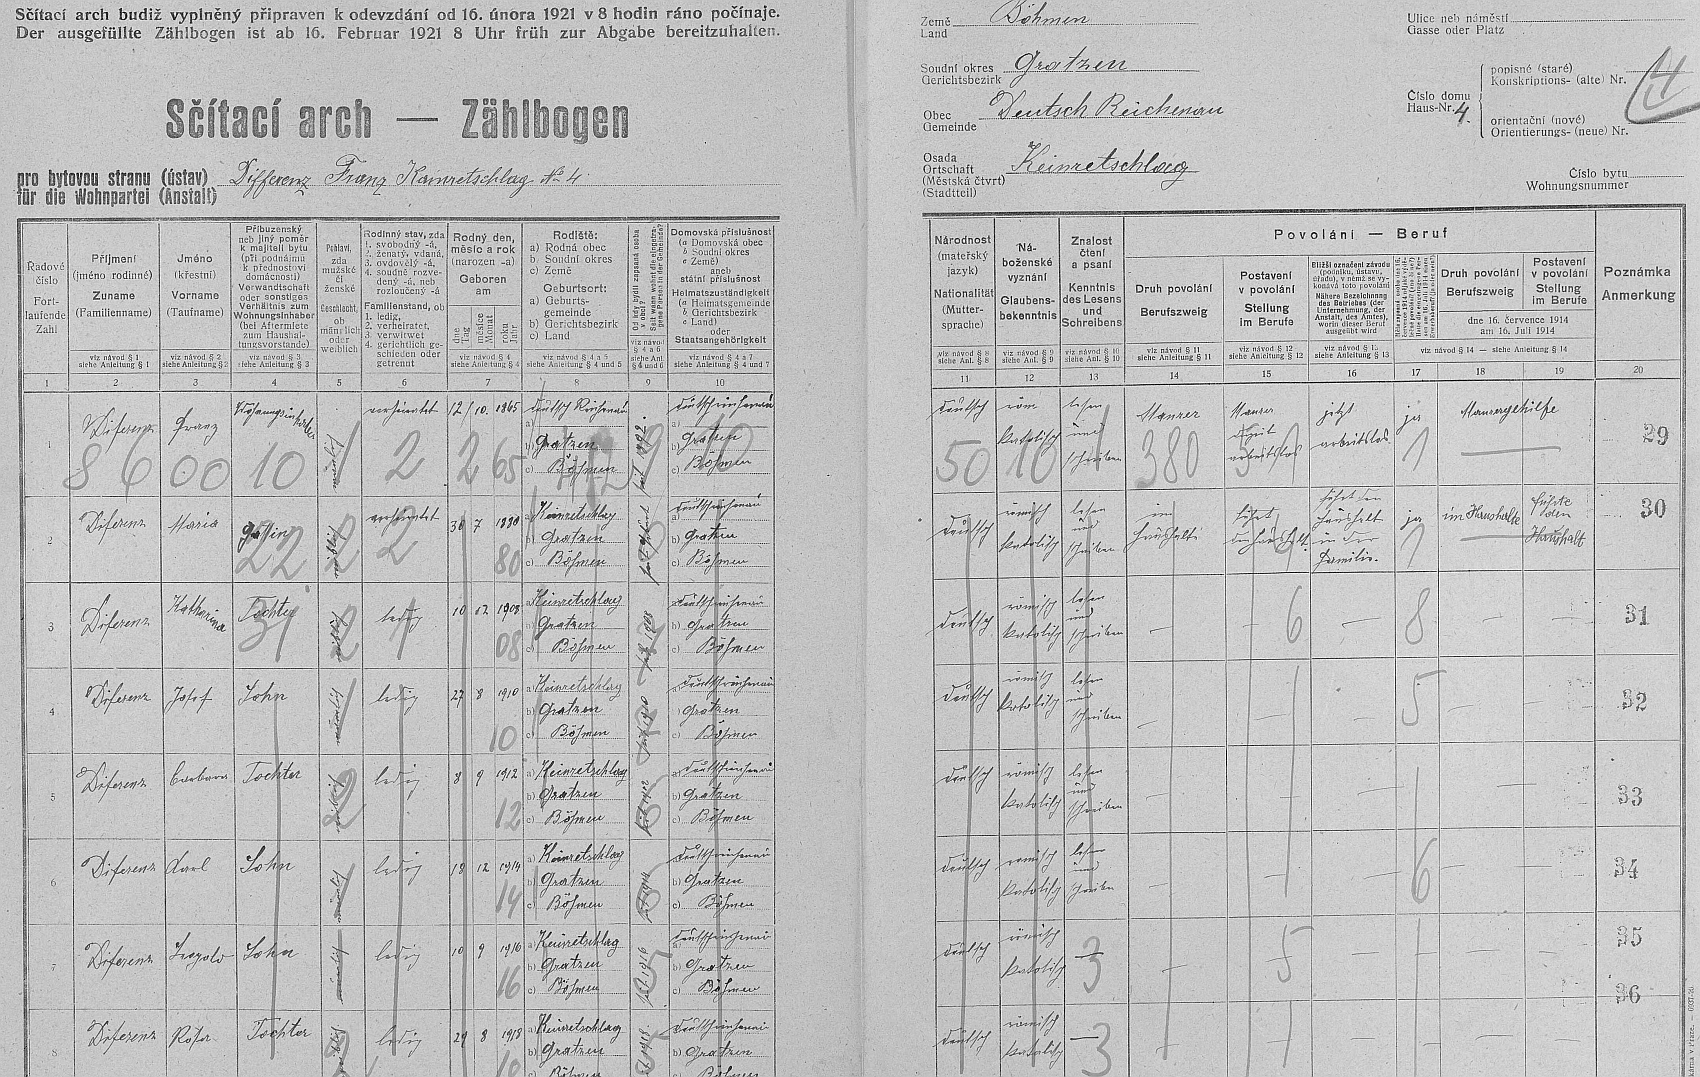 Arch sčítání lidu z roku 1921 pro dům čp. 4 v Konraticích i s ní